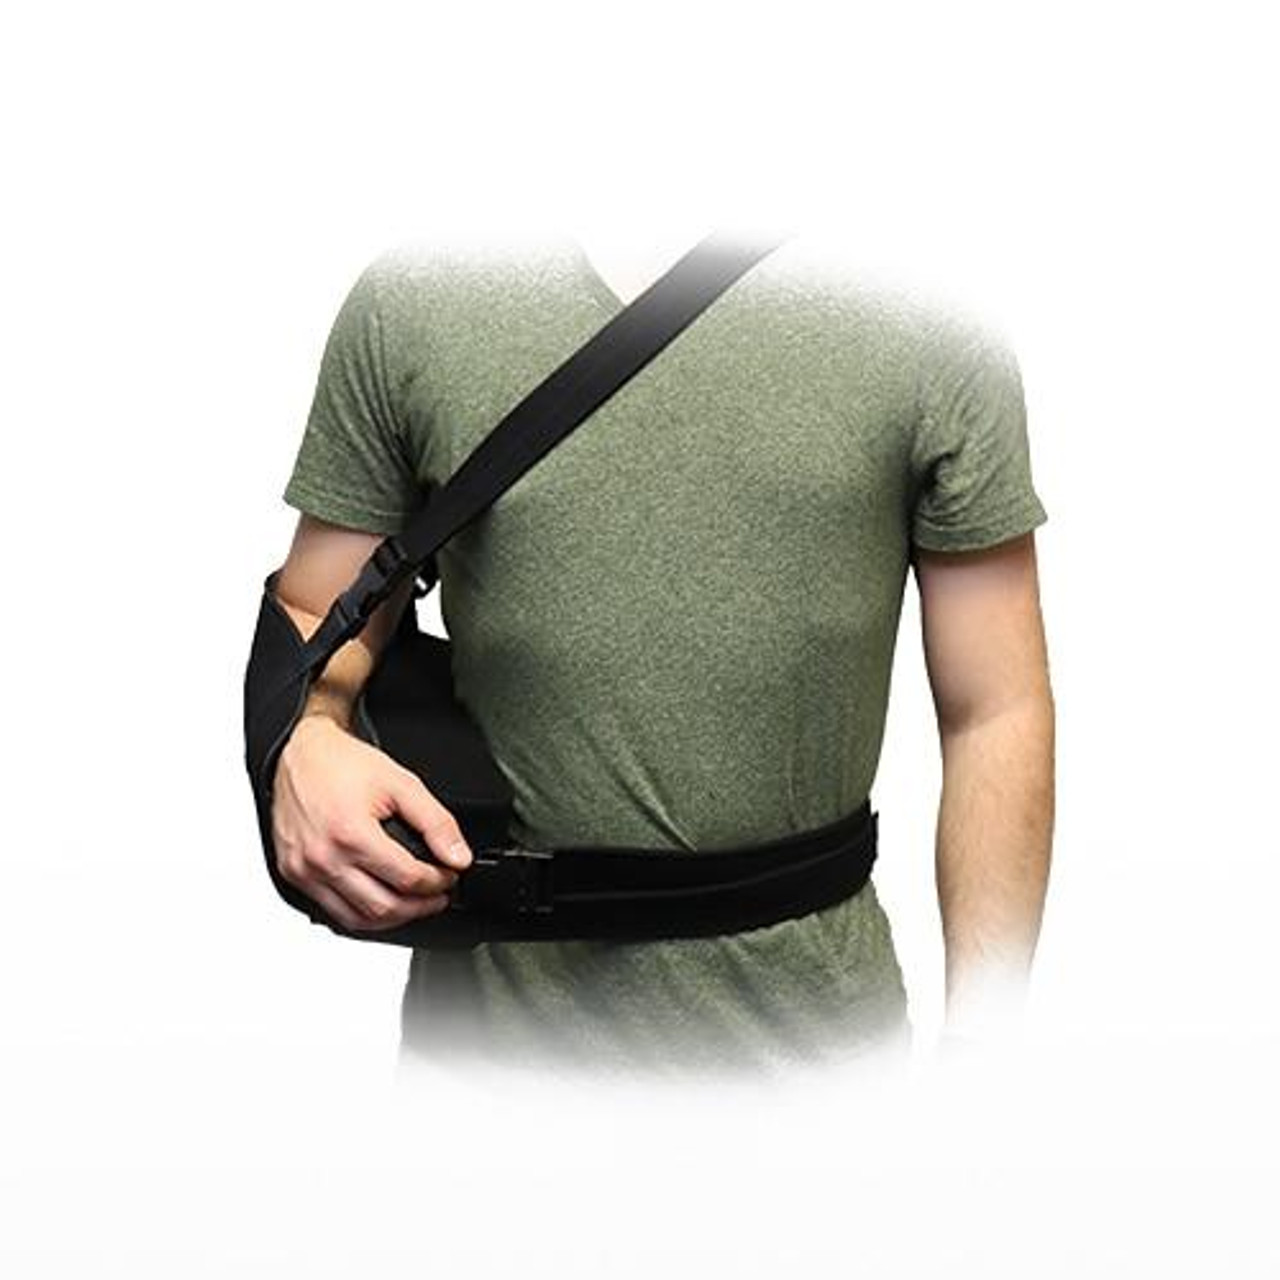 Shoulder Abduction Pillow – Breg, Inc.